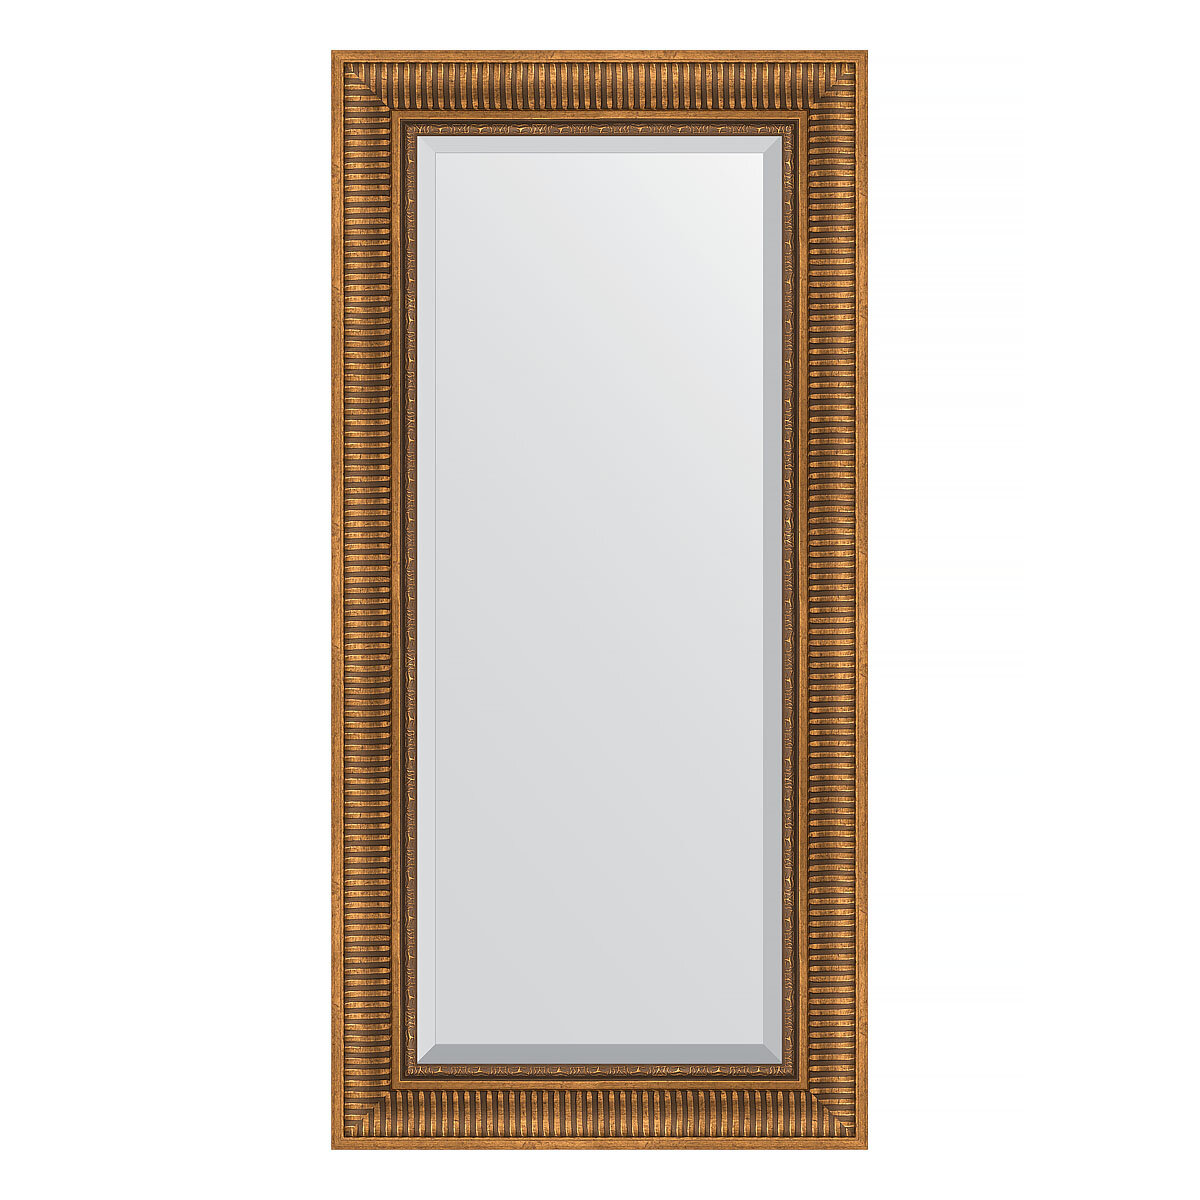 Evoform Зеркало настенное с фацетом EVOFORM в багетной раме бронзовый акведук, 57х117 см, BY 3492